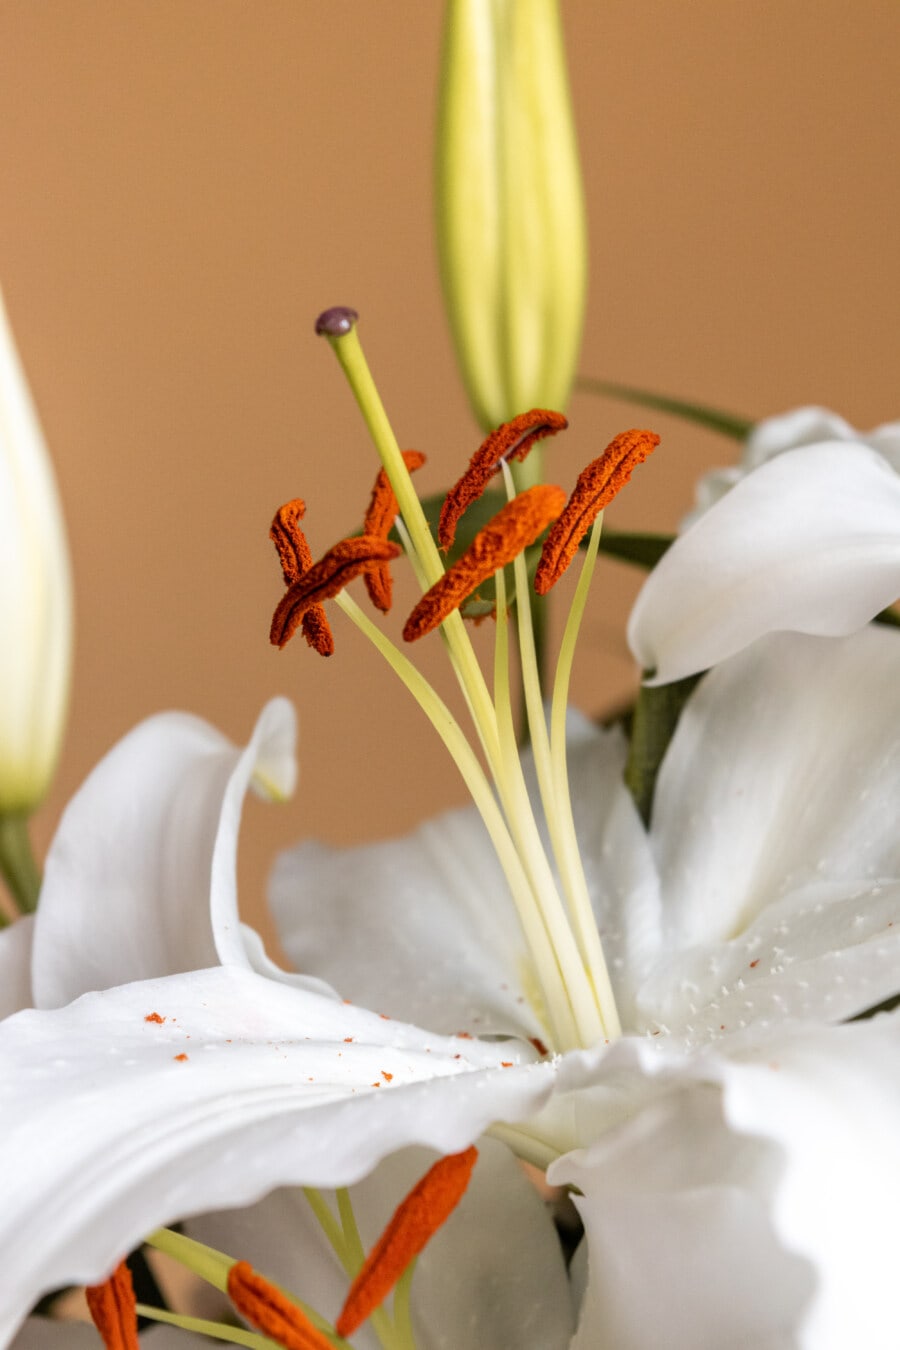 white flower, lily, pistil, pollen, close-up, flower, nature, leaf, stamen, elegant